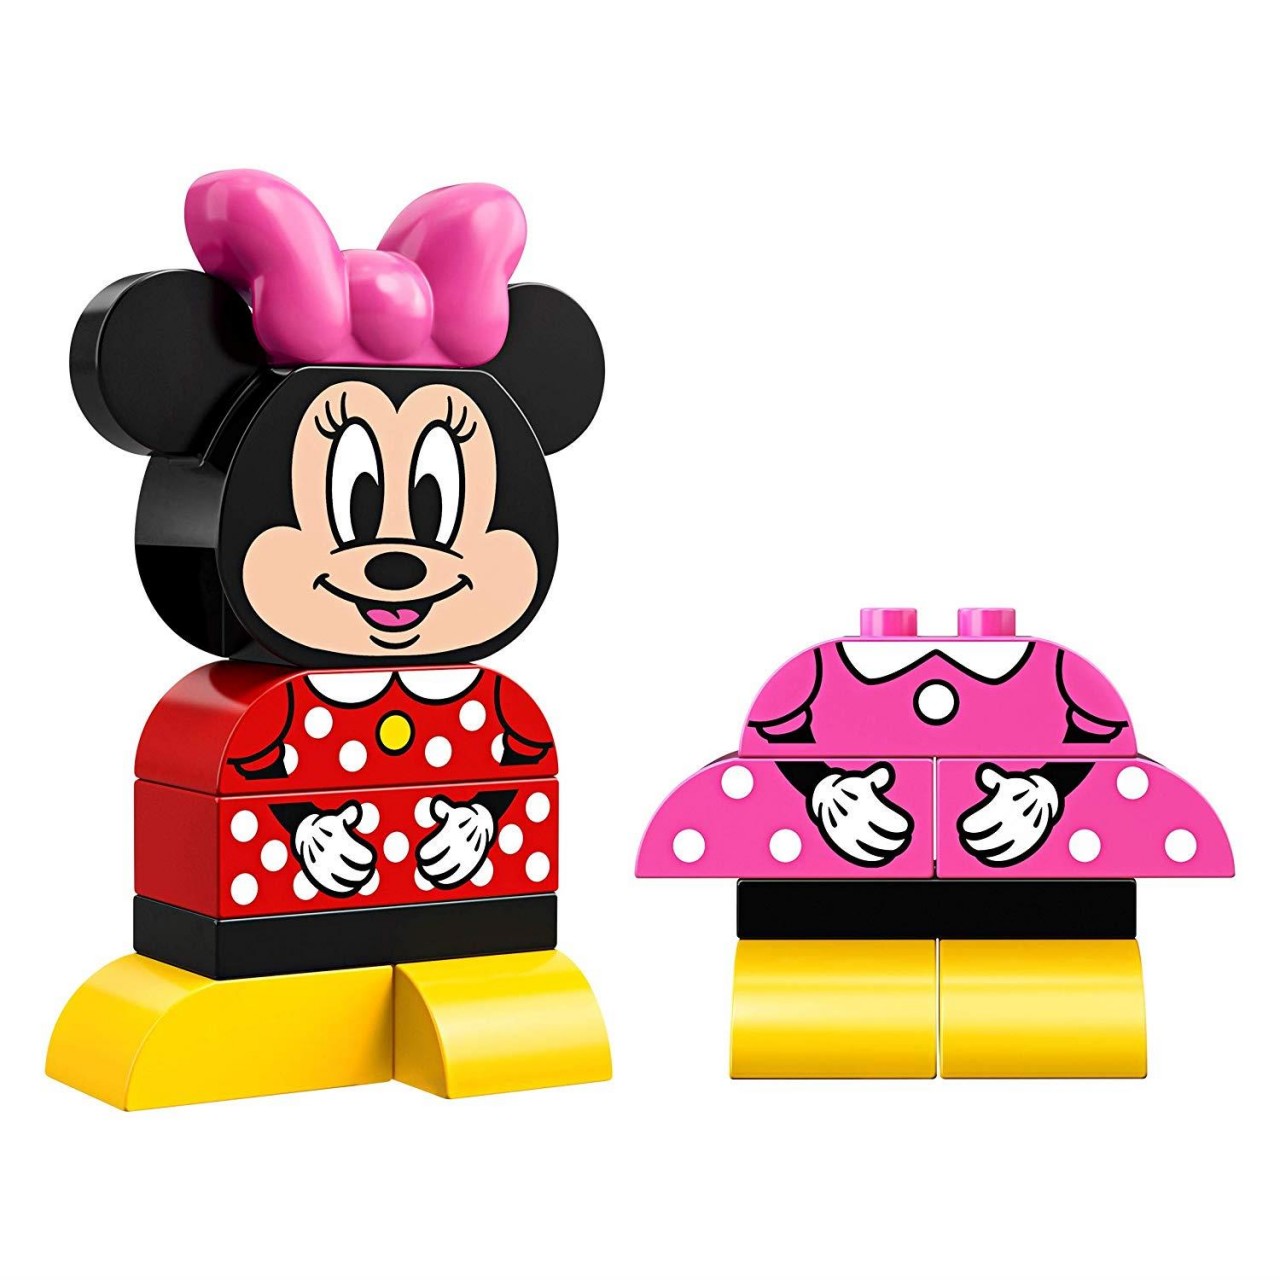 LEGO DUPLO 10897 Meine erste Minnie Maus